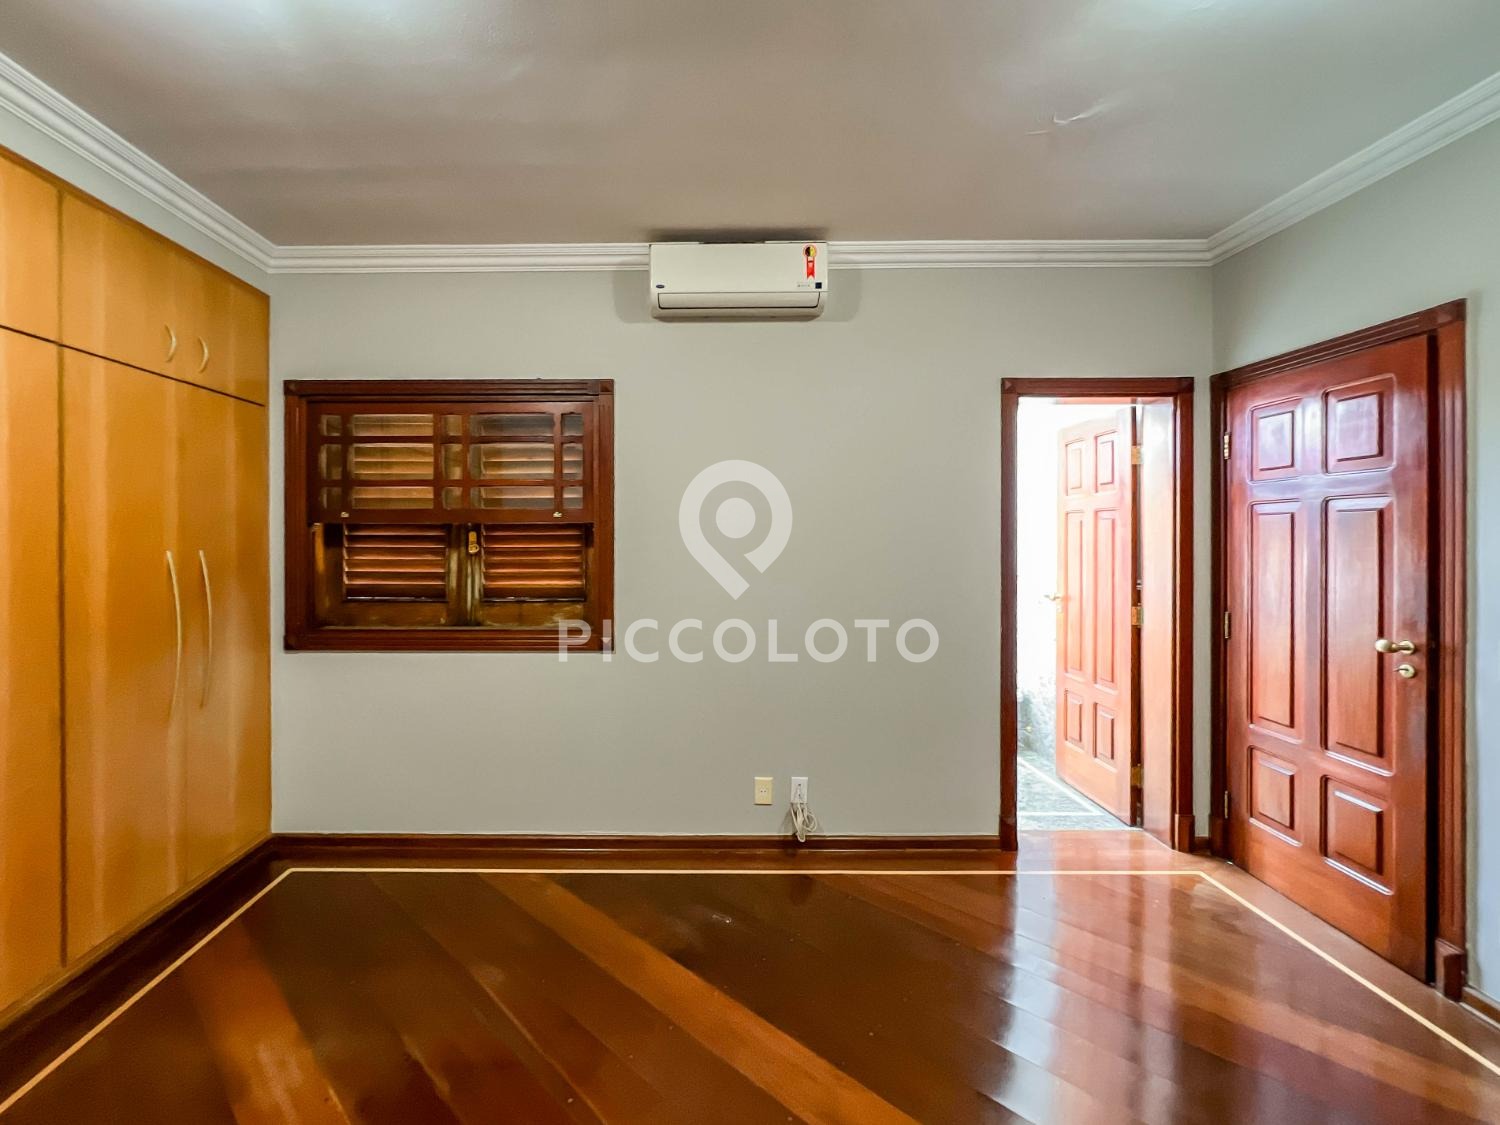 Piccoloto -Casa à venda no Vila Embaré em Valinhos